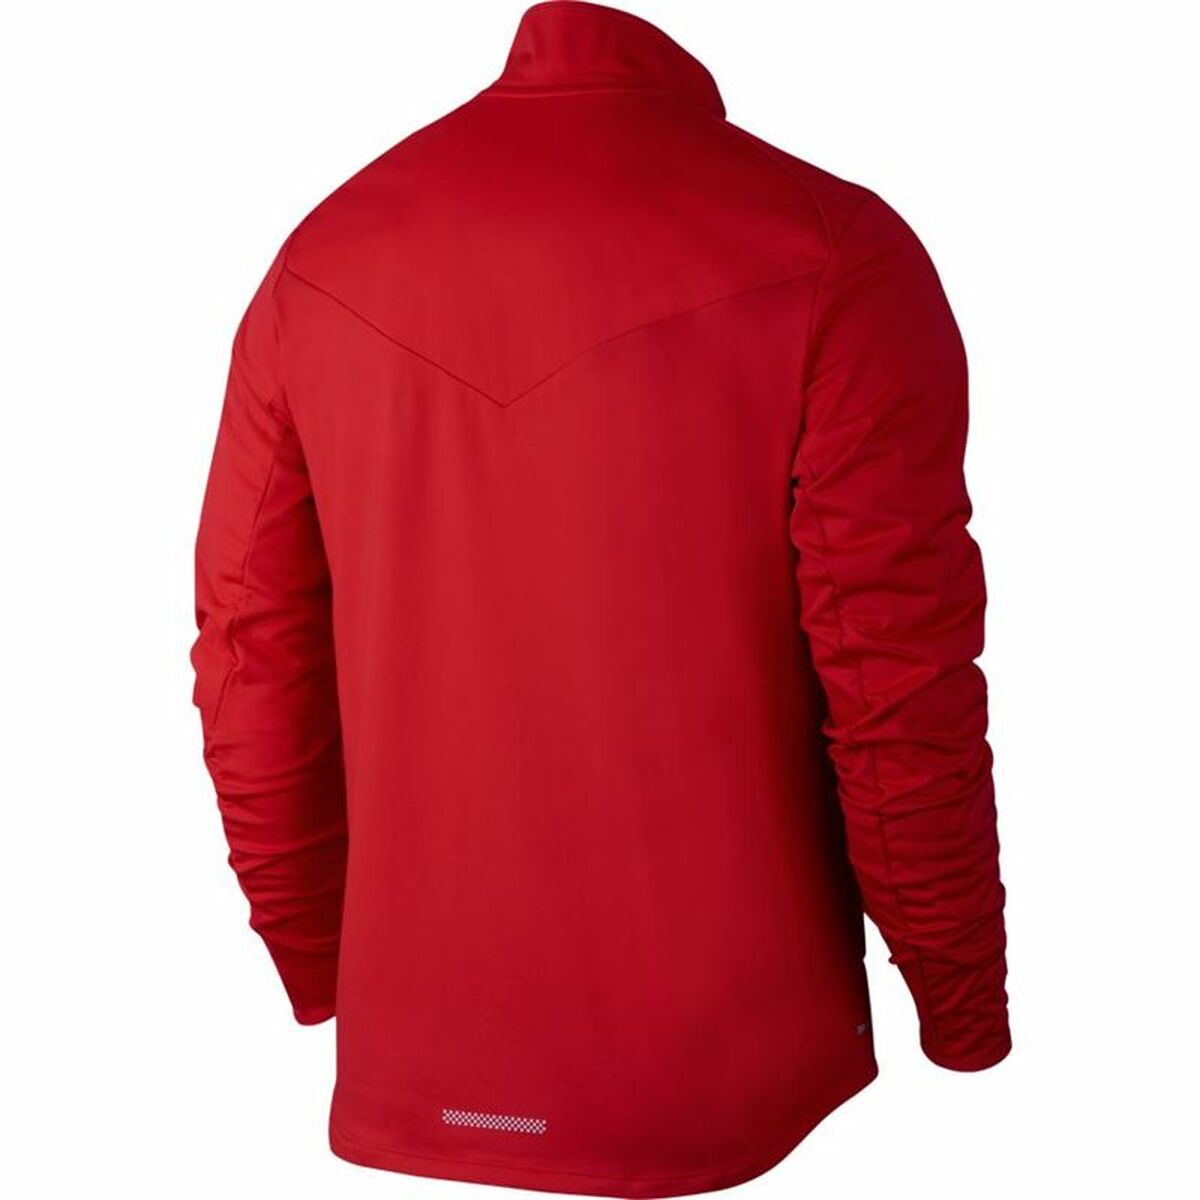 Men's Sports Jacket Nike Shield Red